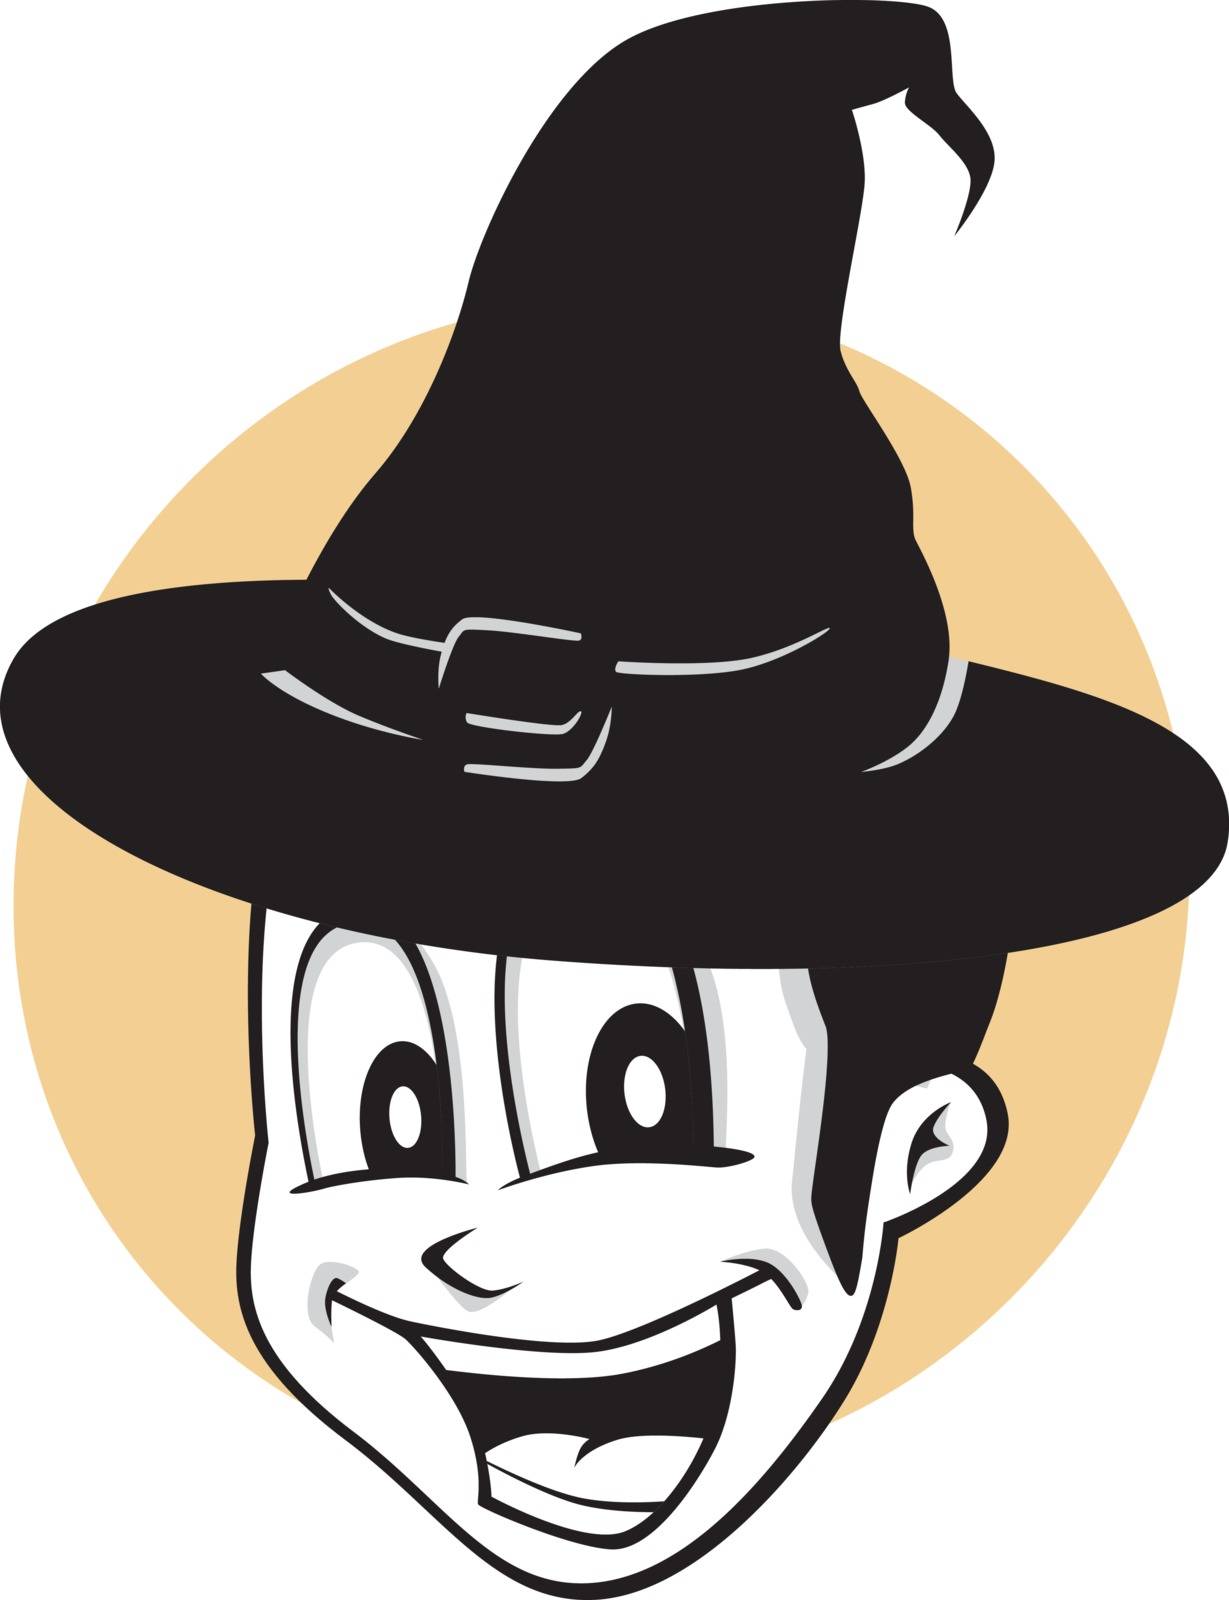 halloween cartoon character theme vector art illustration